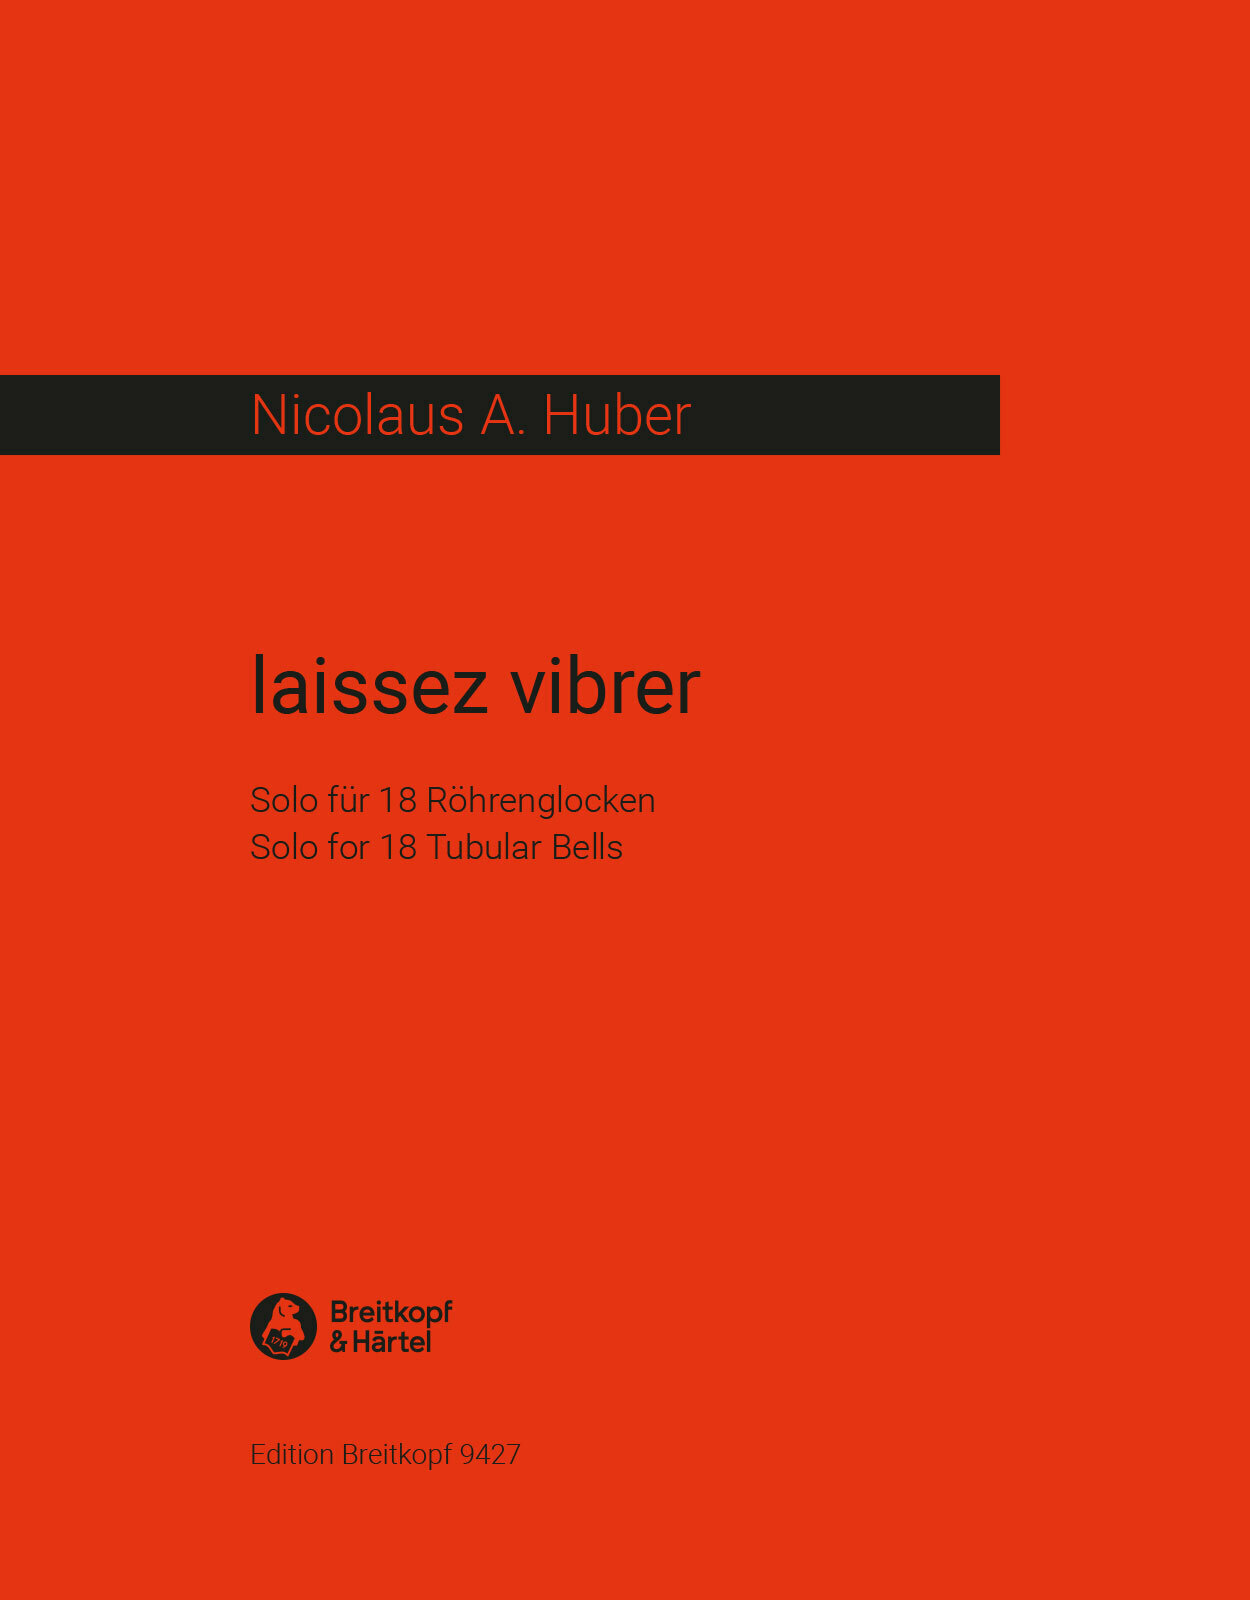 Huber Laissez Vibrer Solo For 18 Tubular Bells Sheet Music Songbook